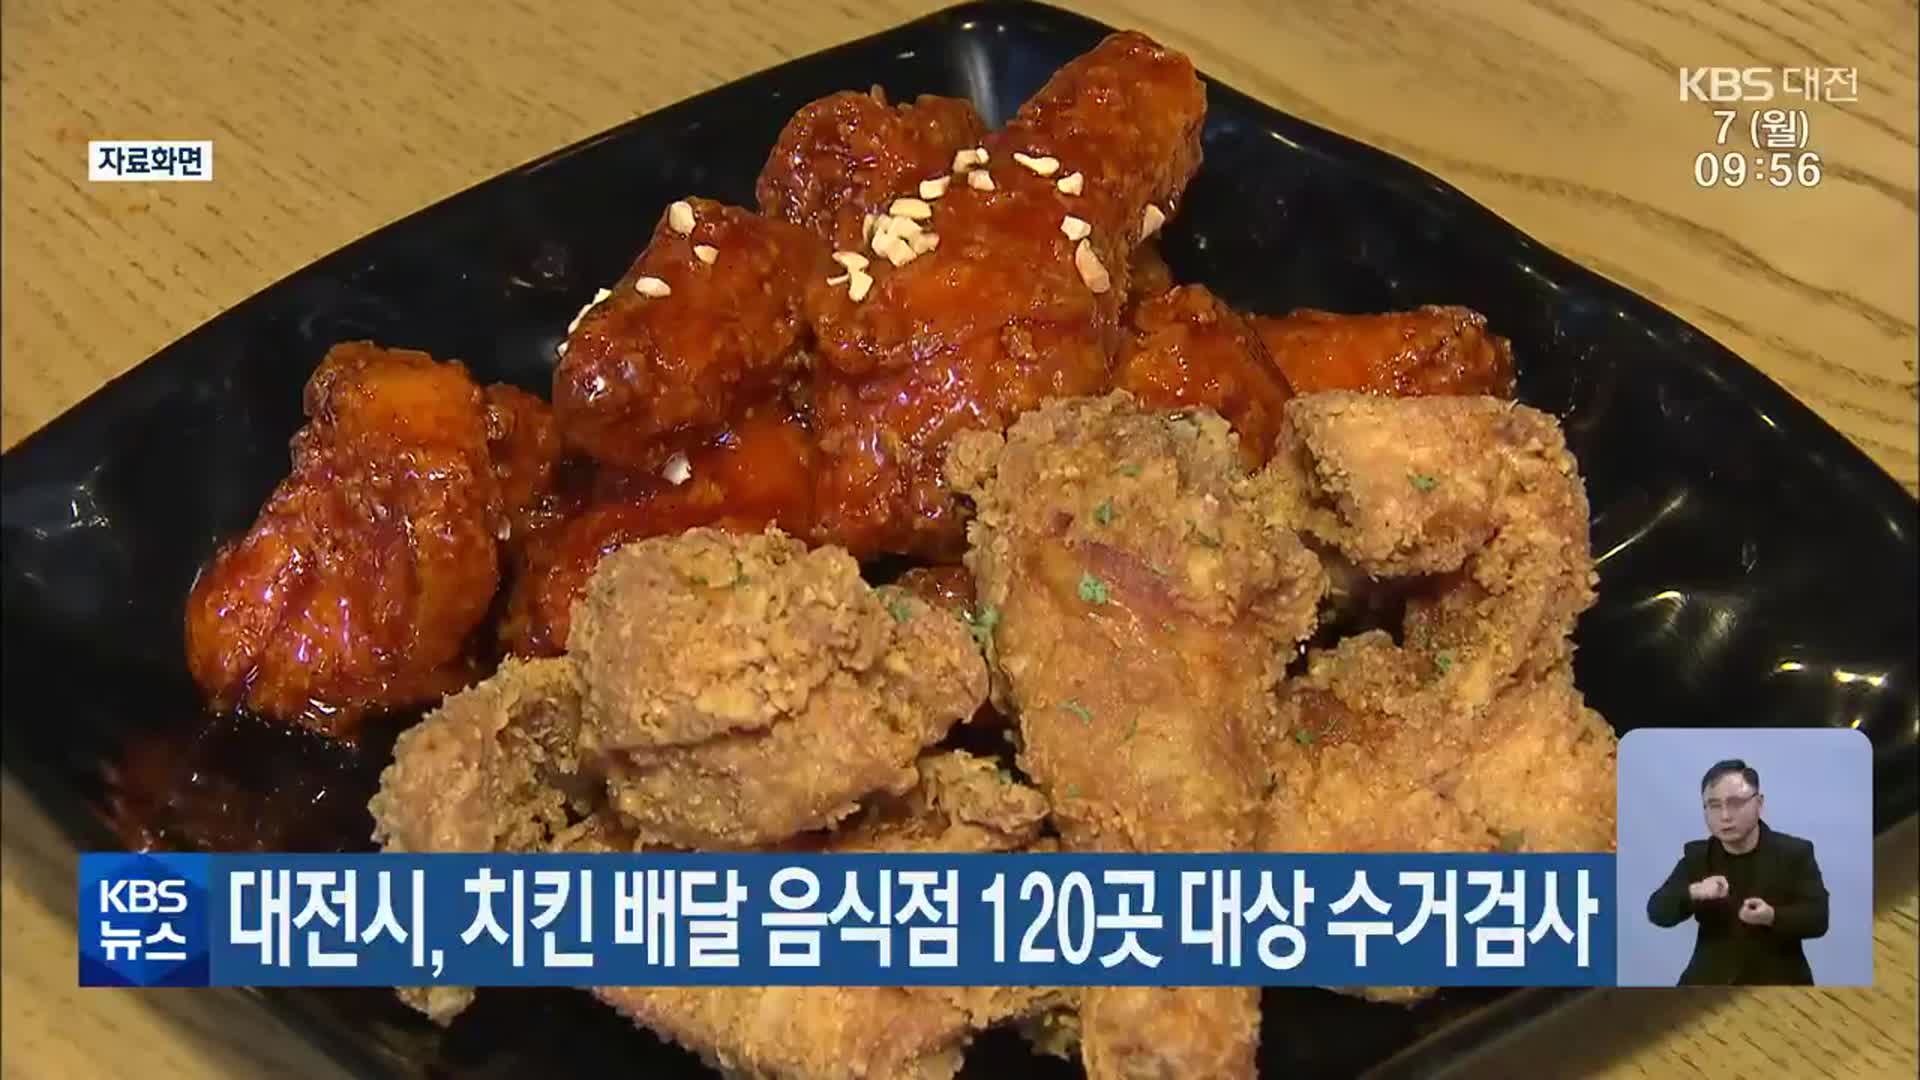 대전시, 치킨 배달 음식점 120곳 대상 수거검사